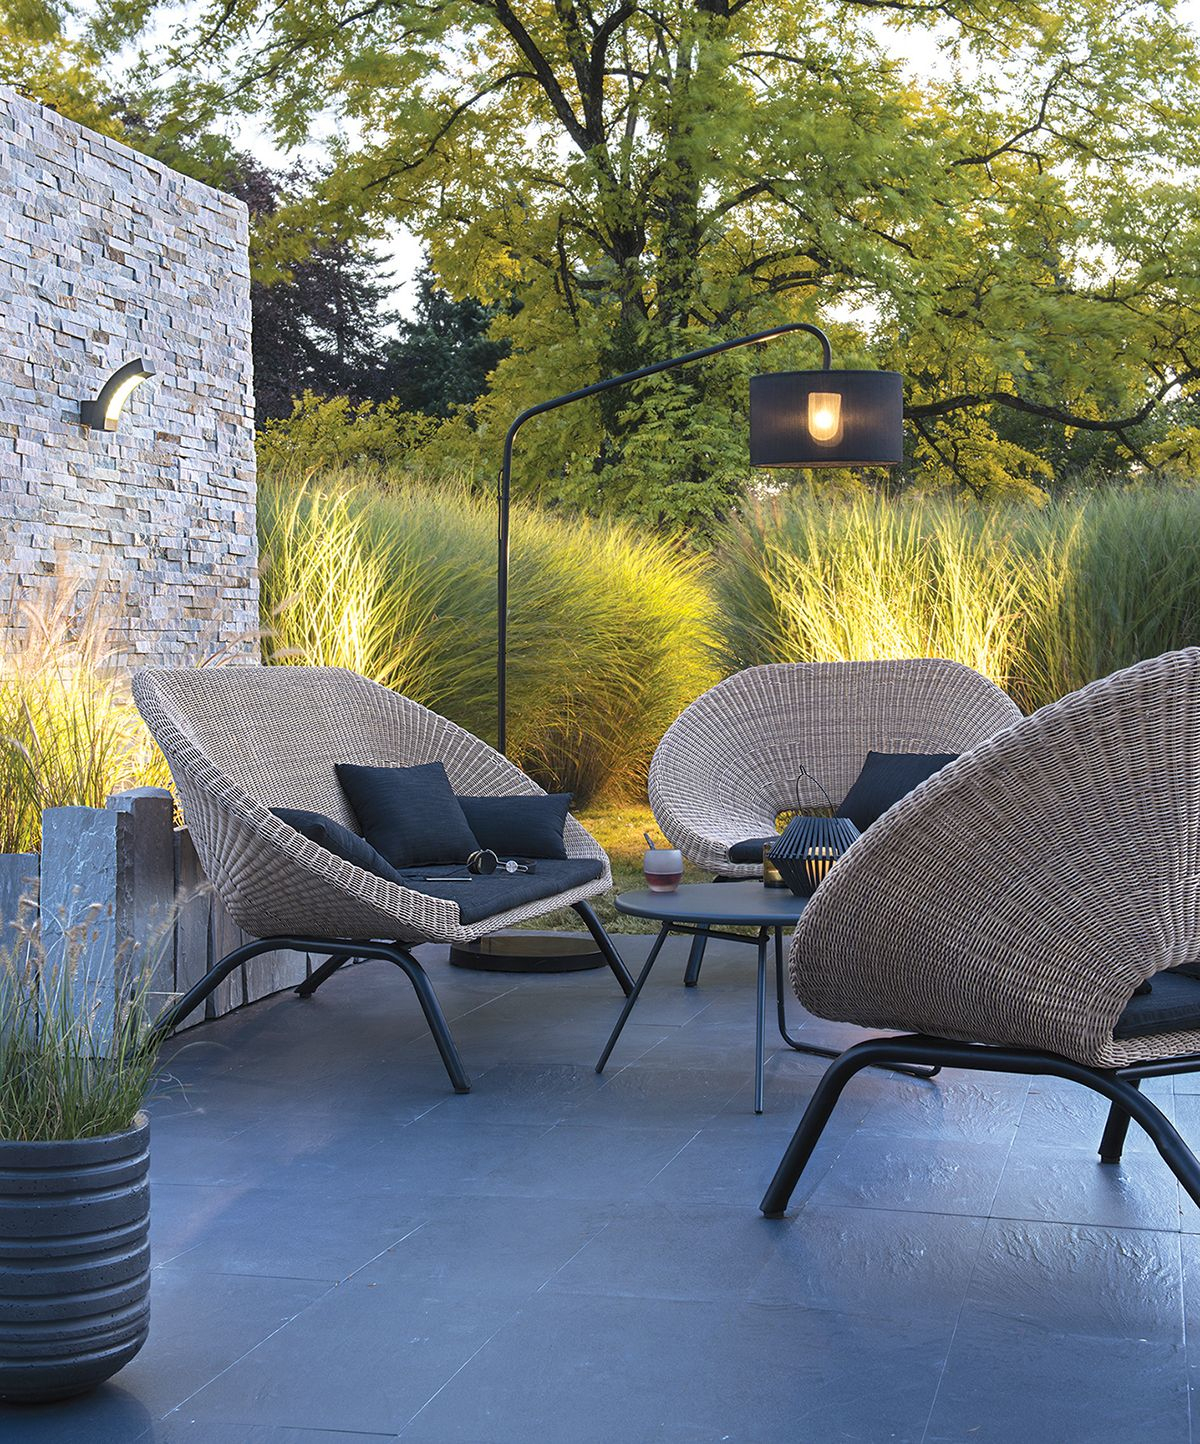 Loa Outdoor Furniture For Blooma On Behance | Meuble Jardin ... encequiconcerne Mobilier De Jardin Blooma